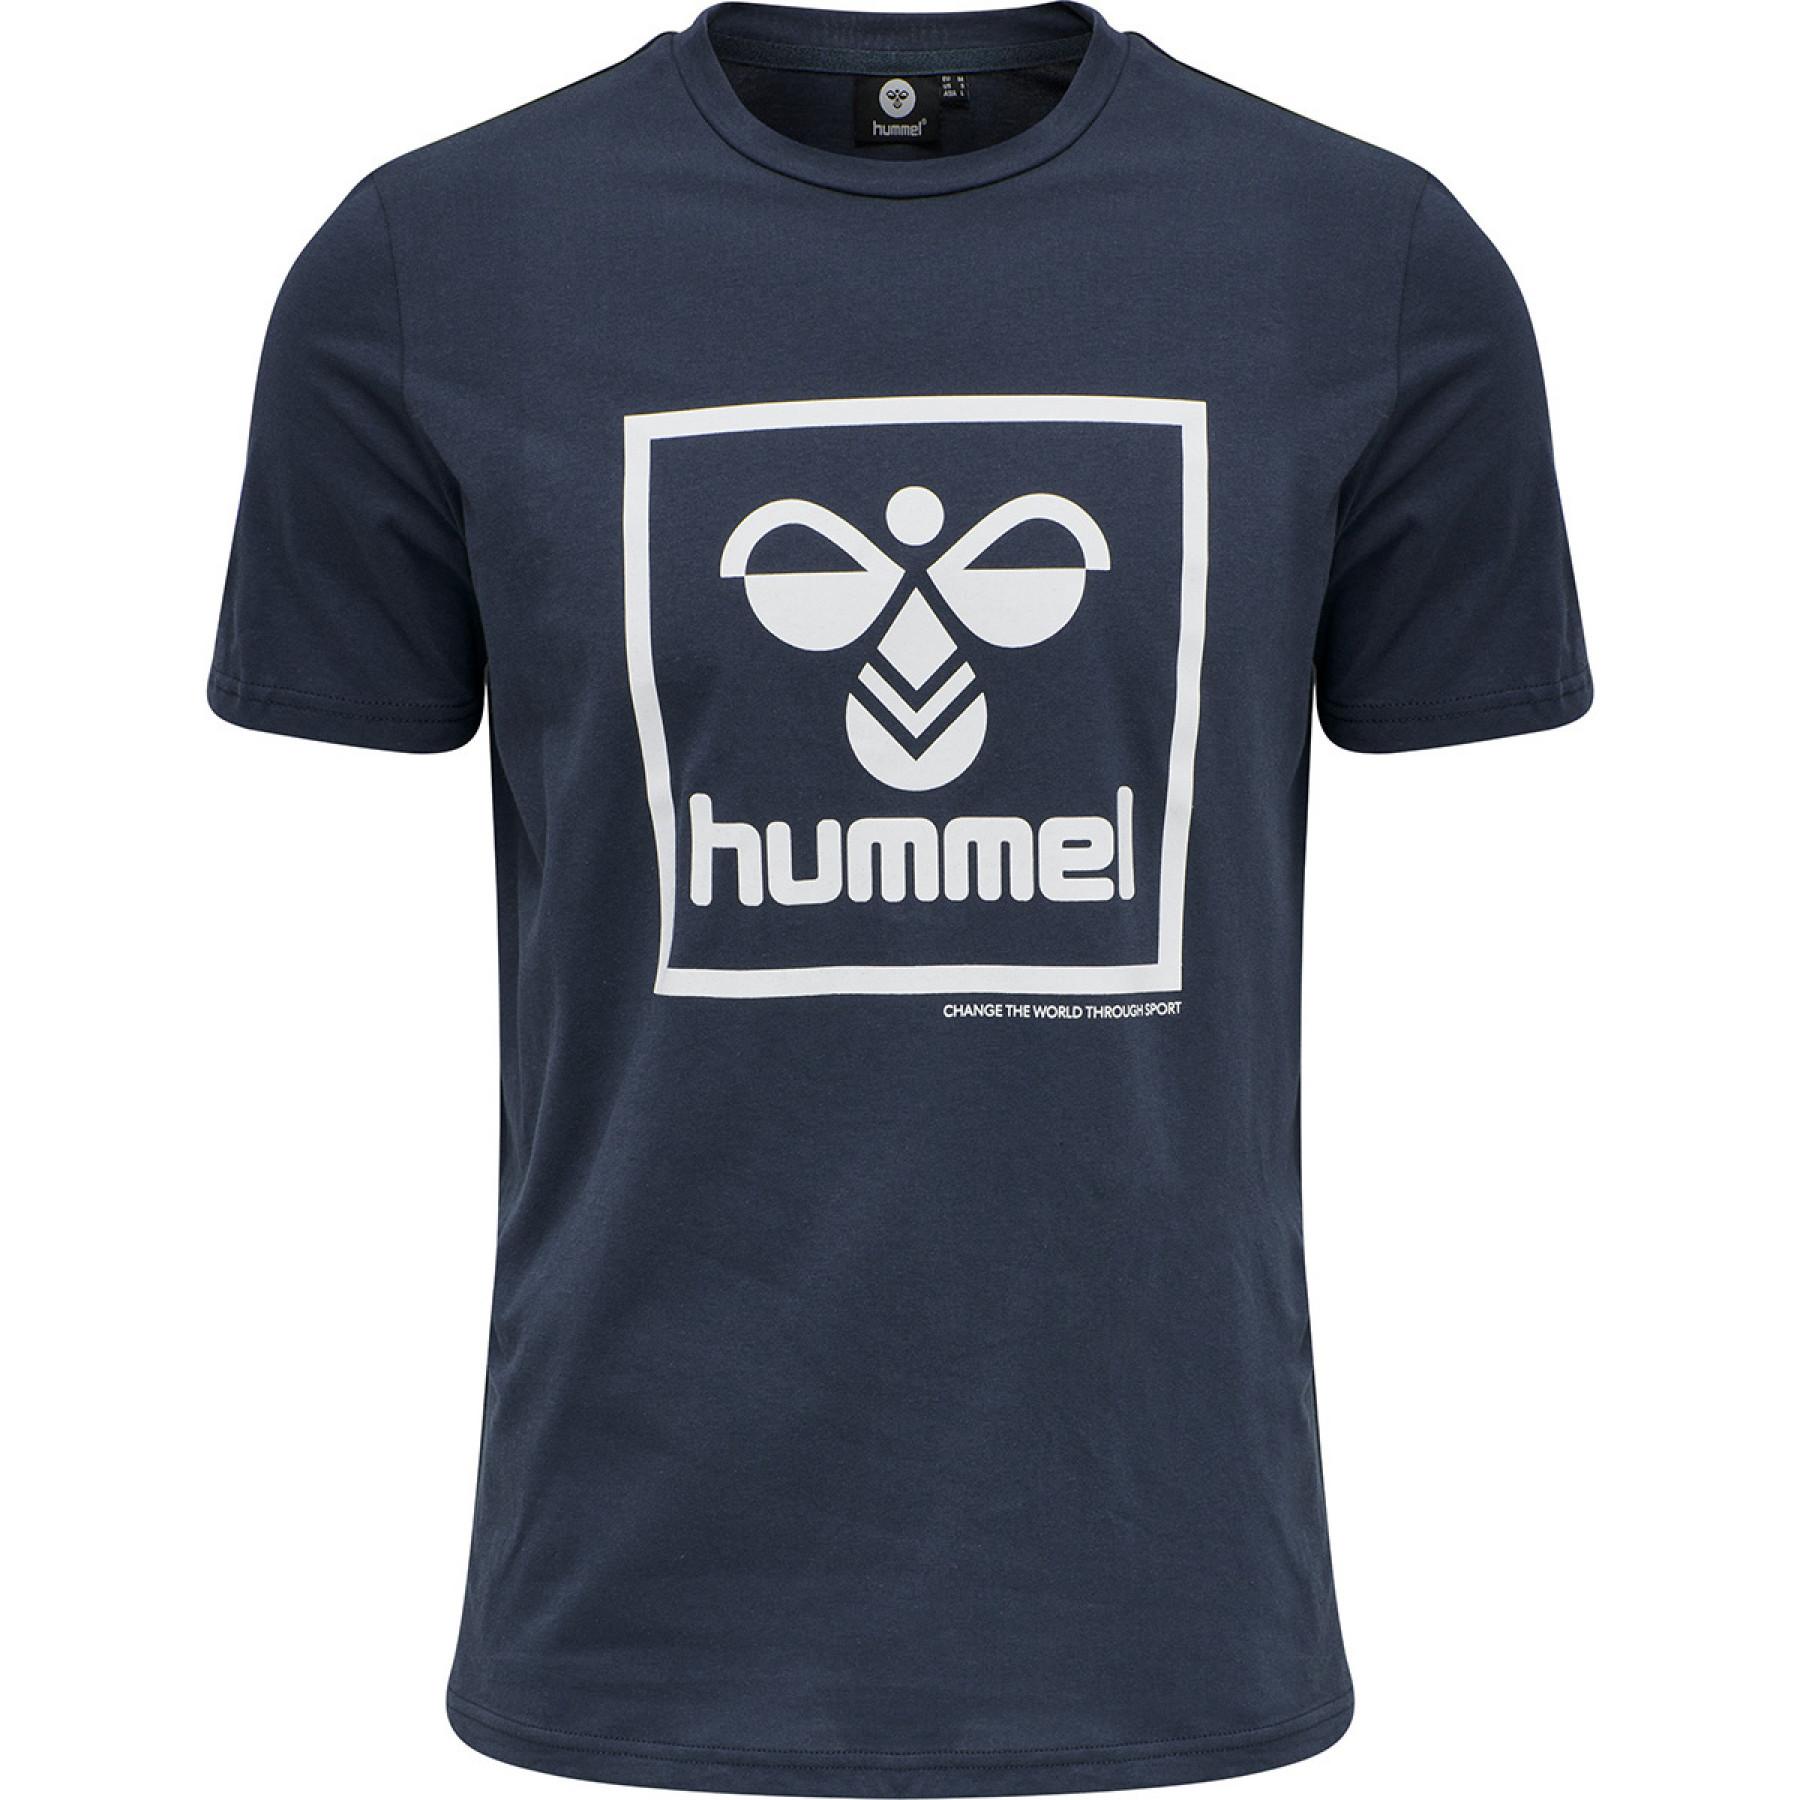 T-shirt Hummel hmlisam